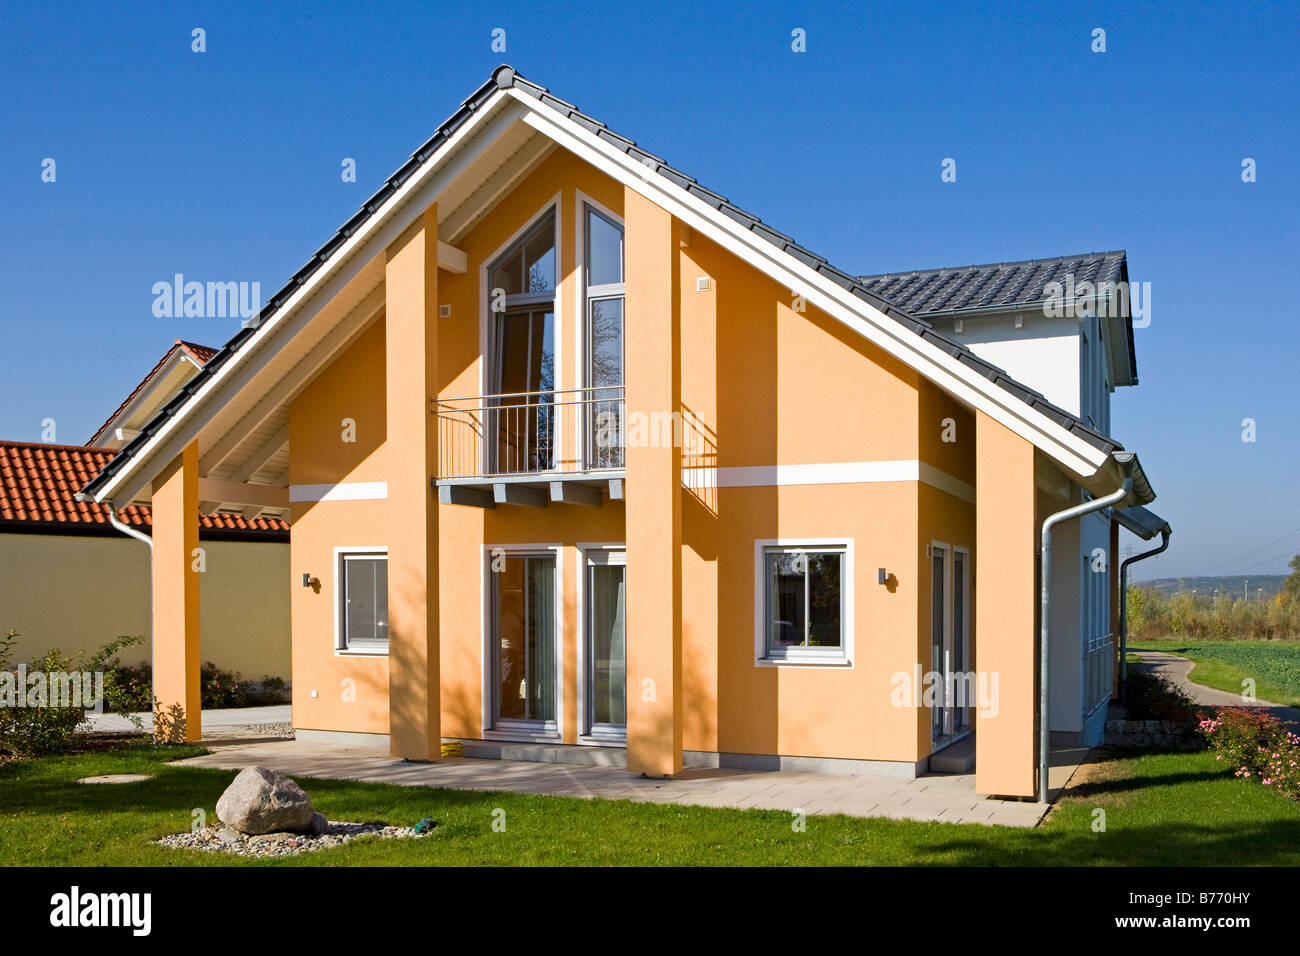 Architektur Einfamilienhaus, family home Stock Photo